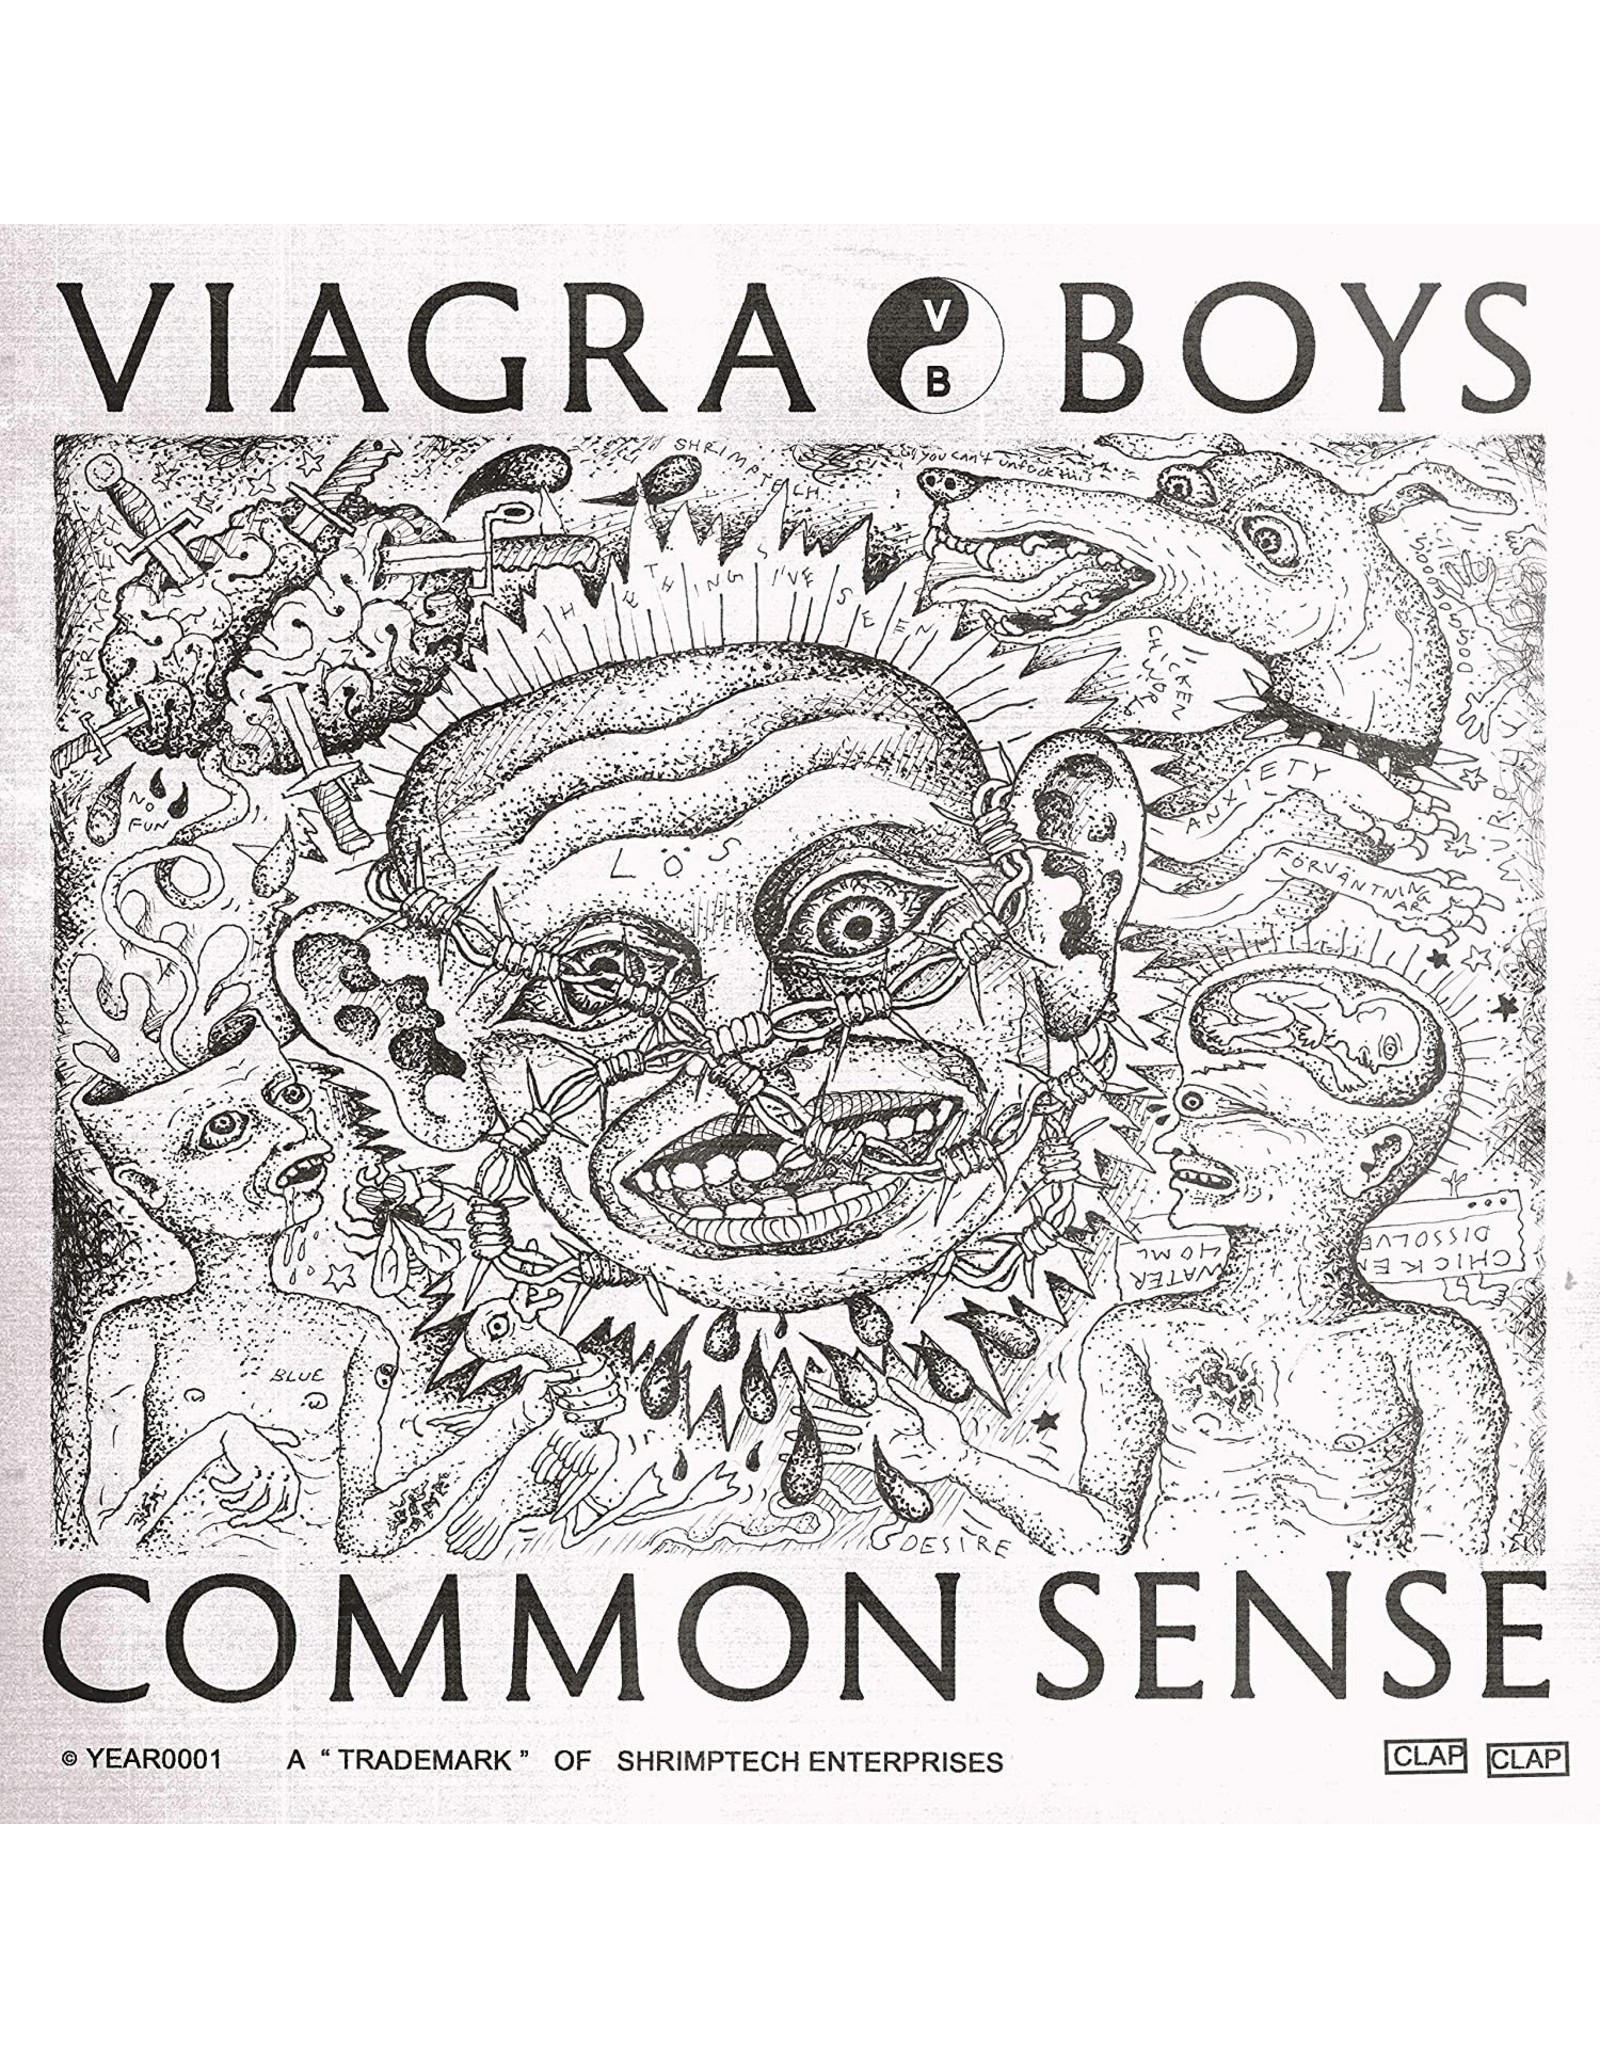 Viagra Boys - Common Sense EP